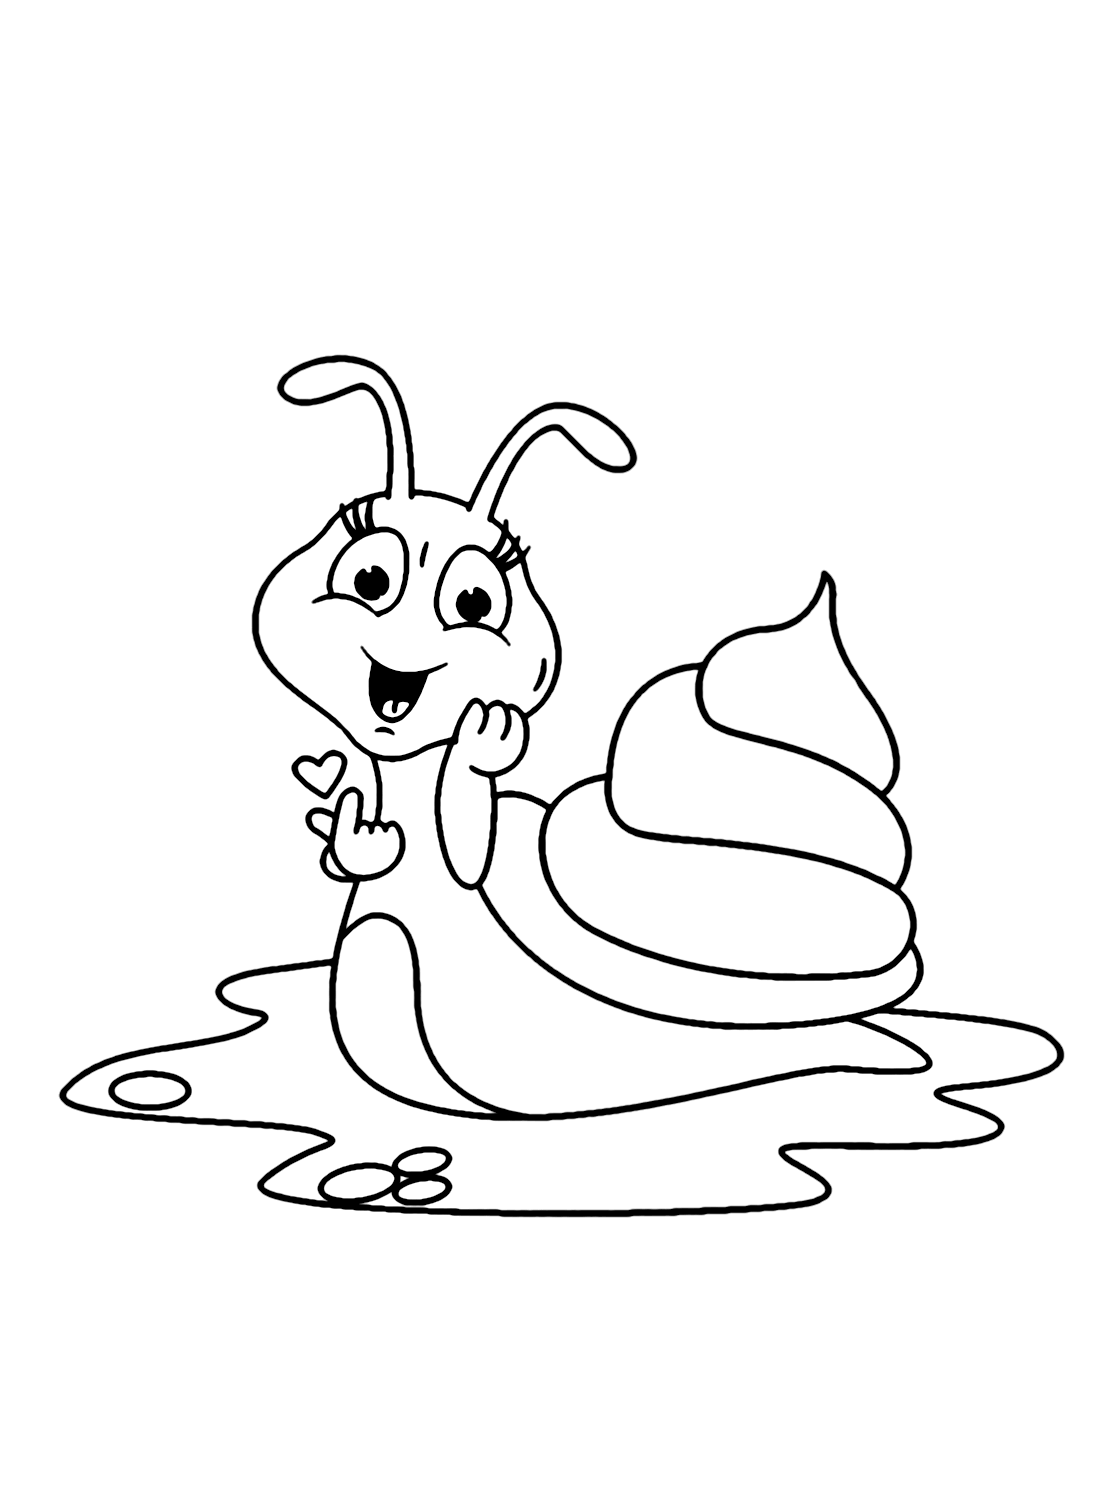 Lovely Snail for Kids from Snail